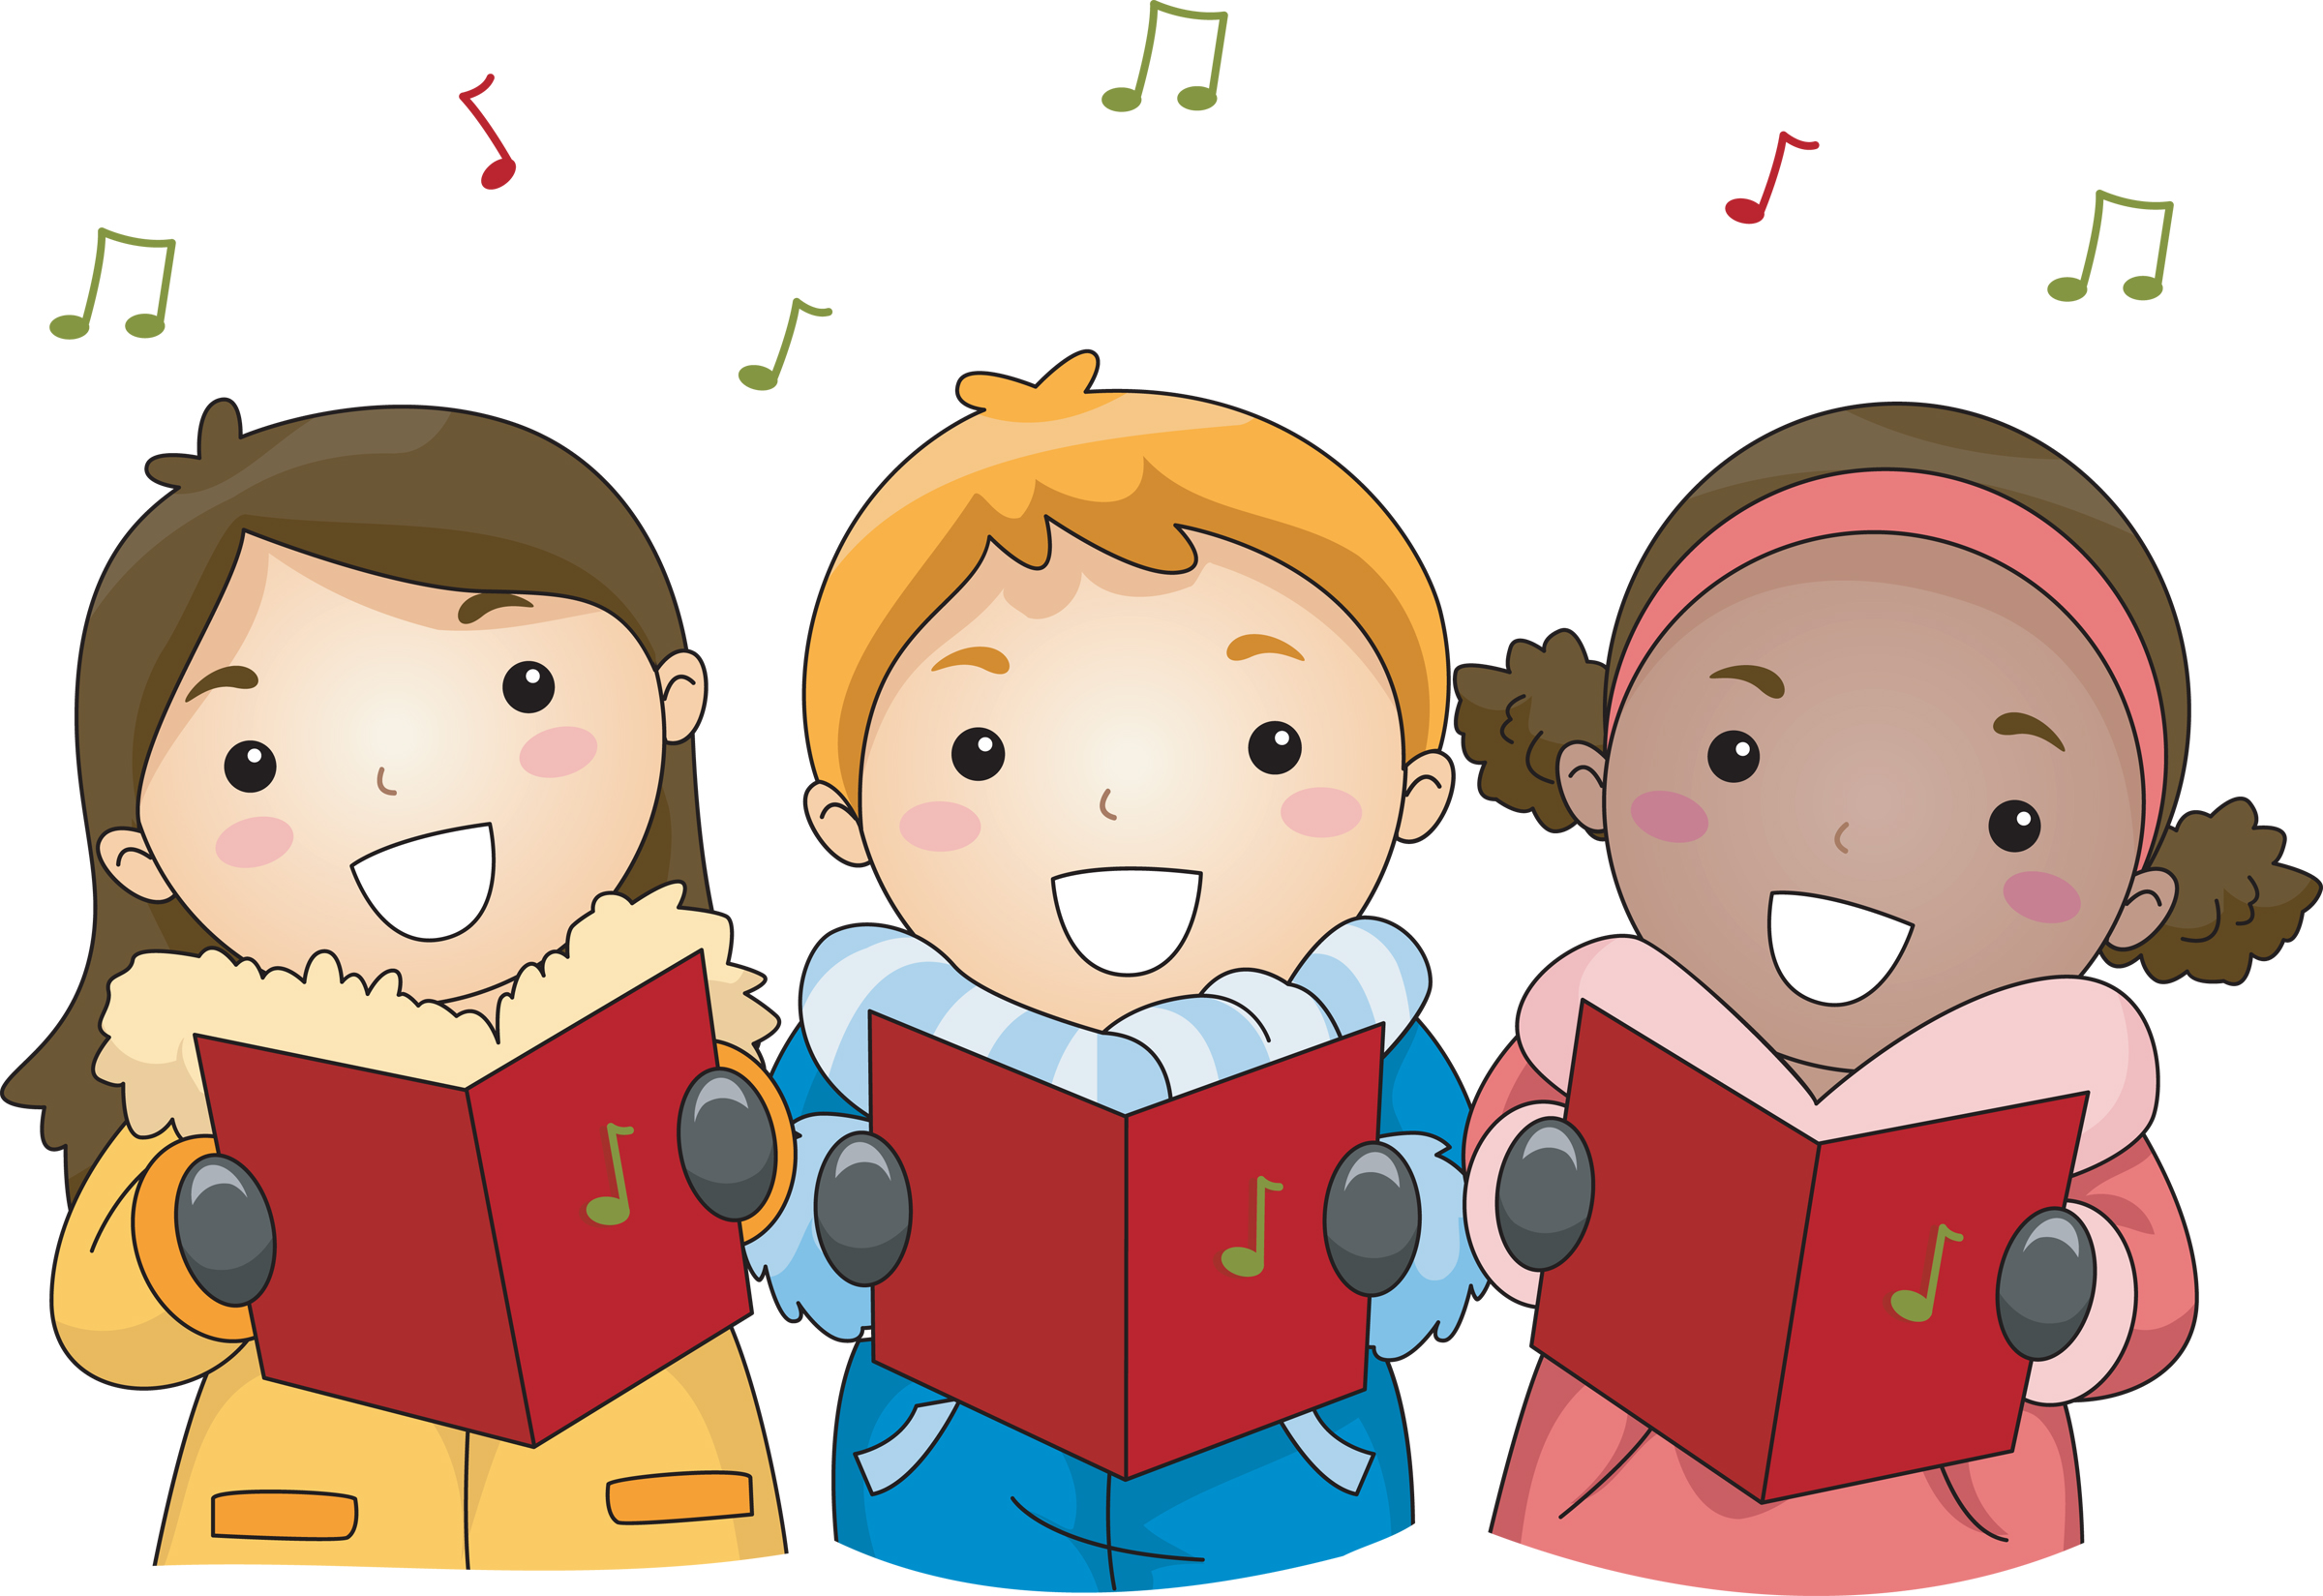 Children in Choir singing